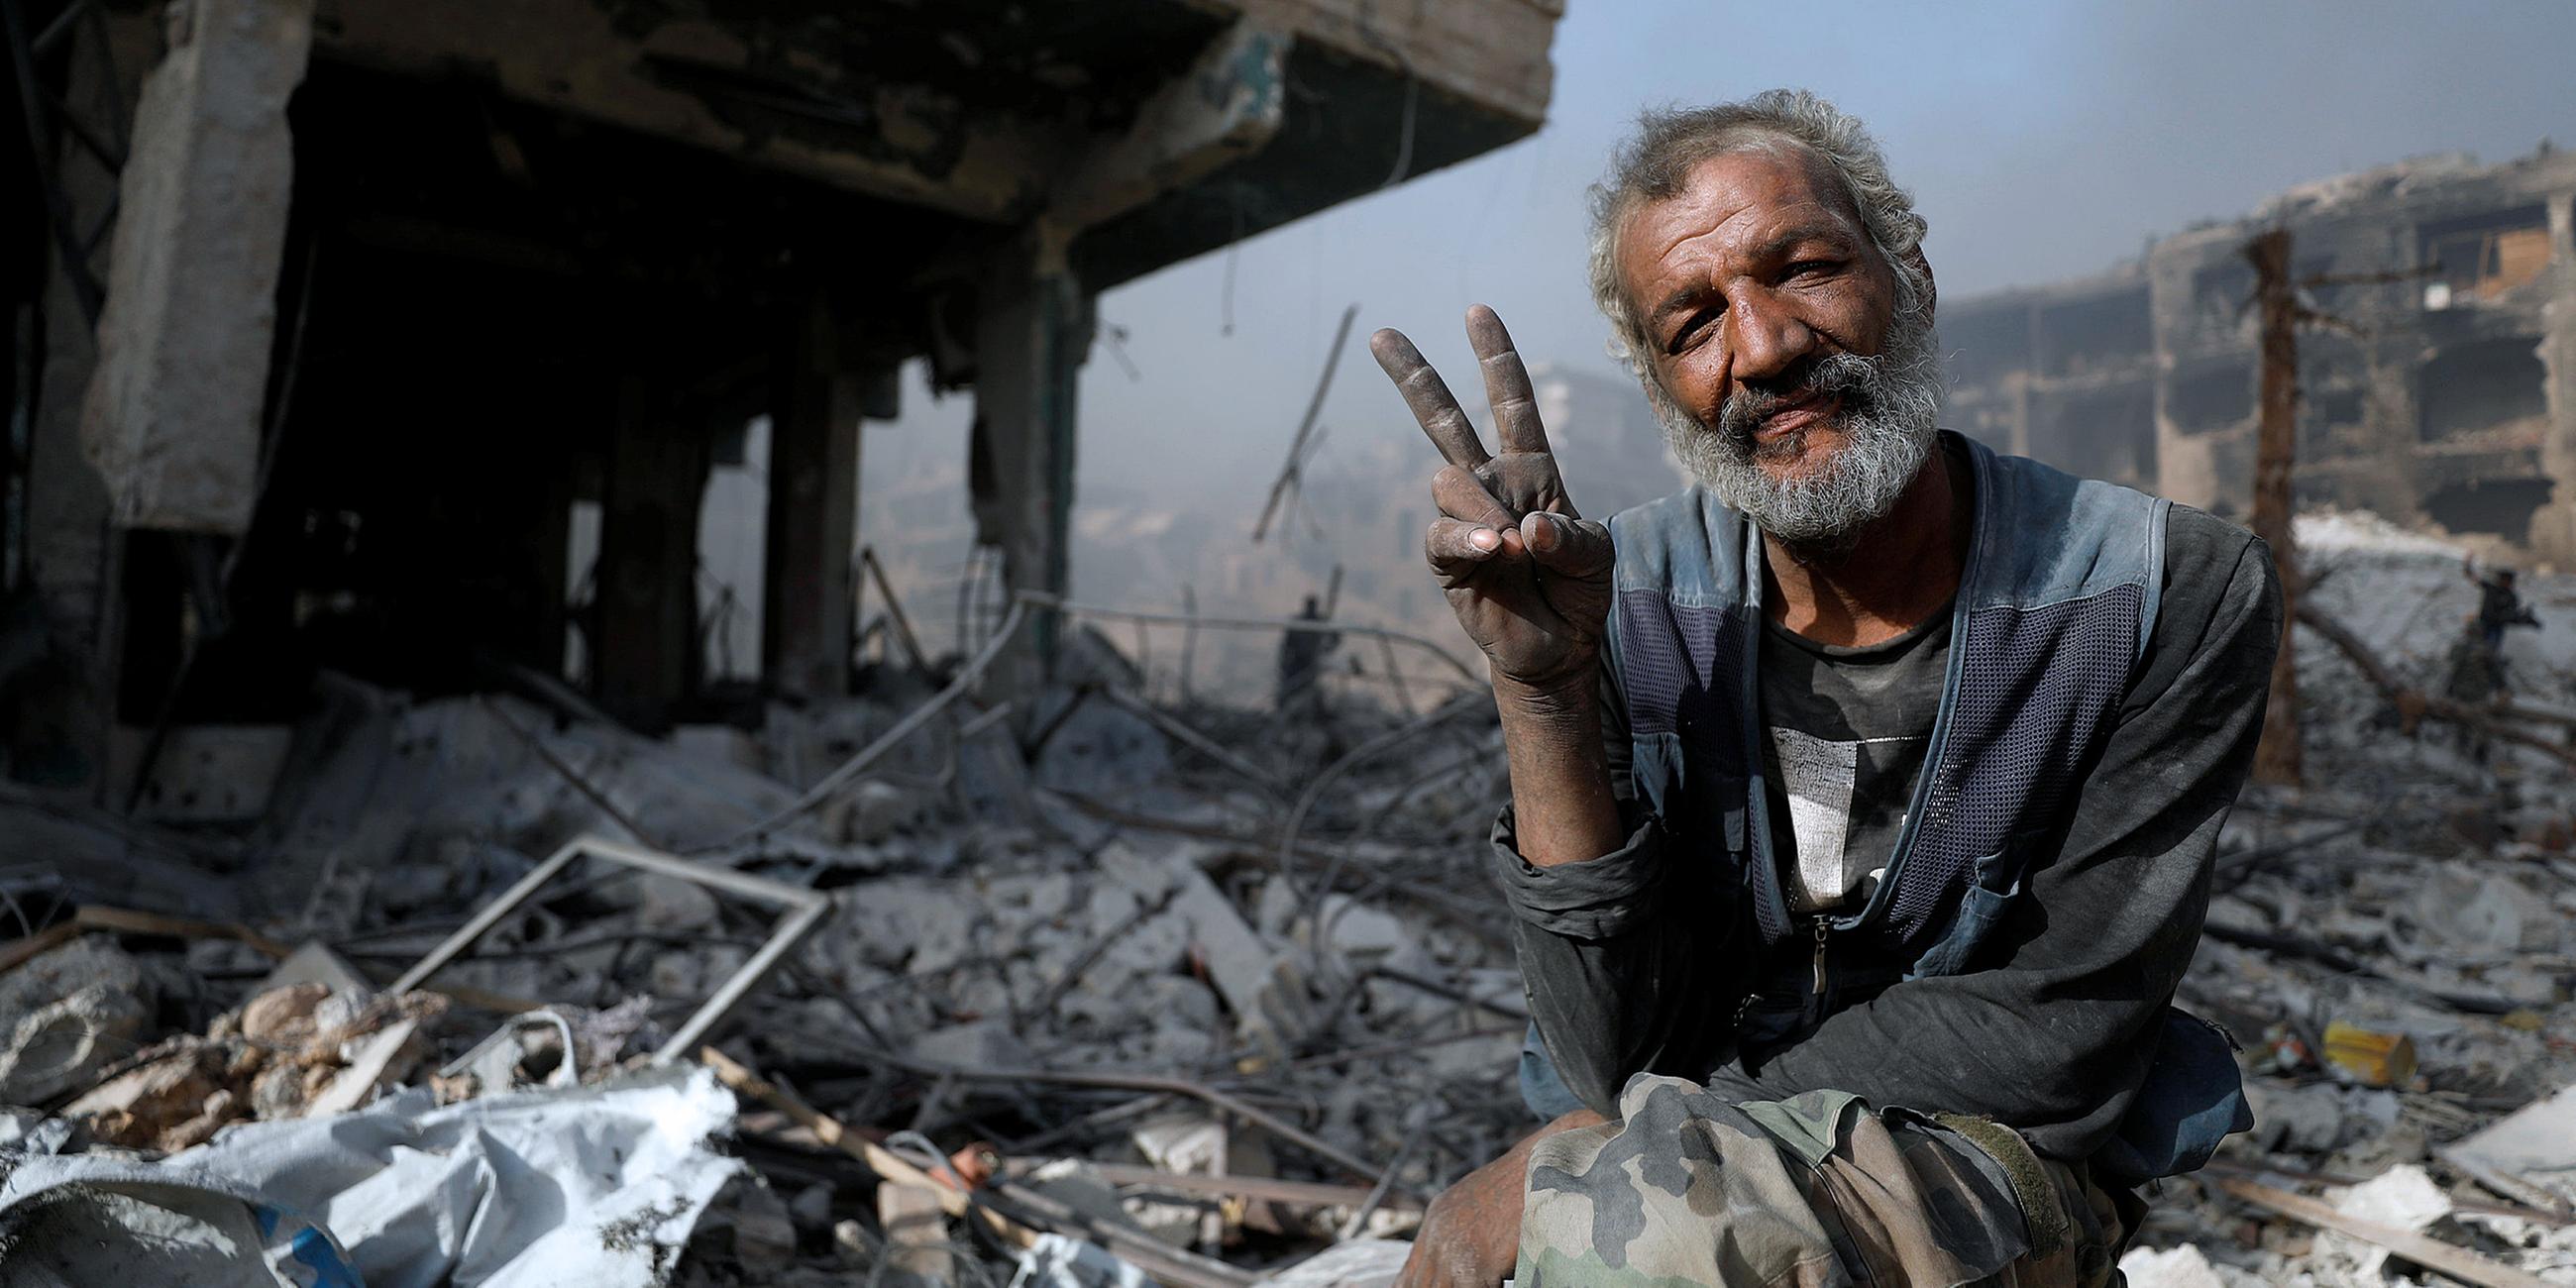 Archiv: Ein Mann zwischen den Trümmern eines zerstörten Gebäudes in Syrien, aufgenommen am 21.05.2018  in Al-Hajar Al-Aswad